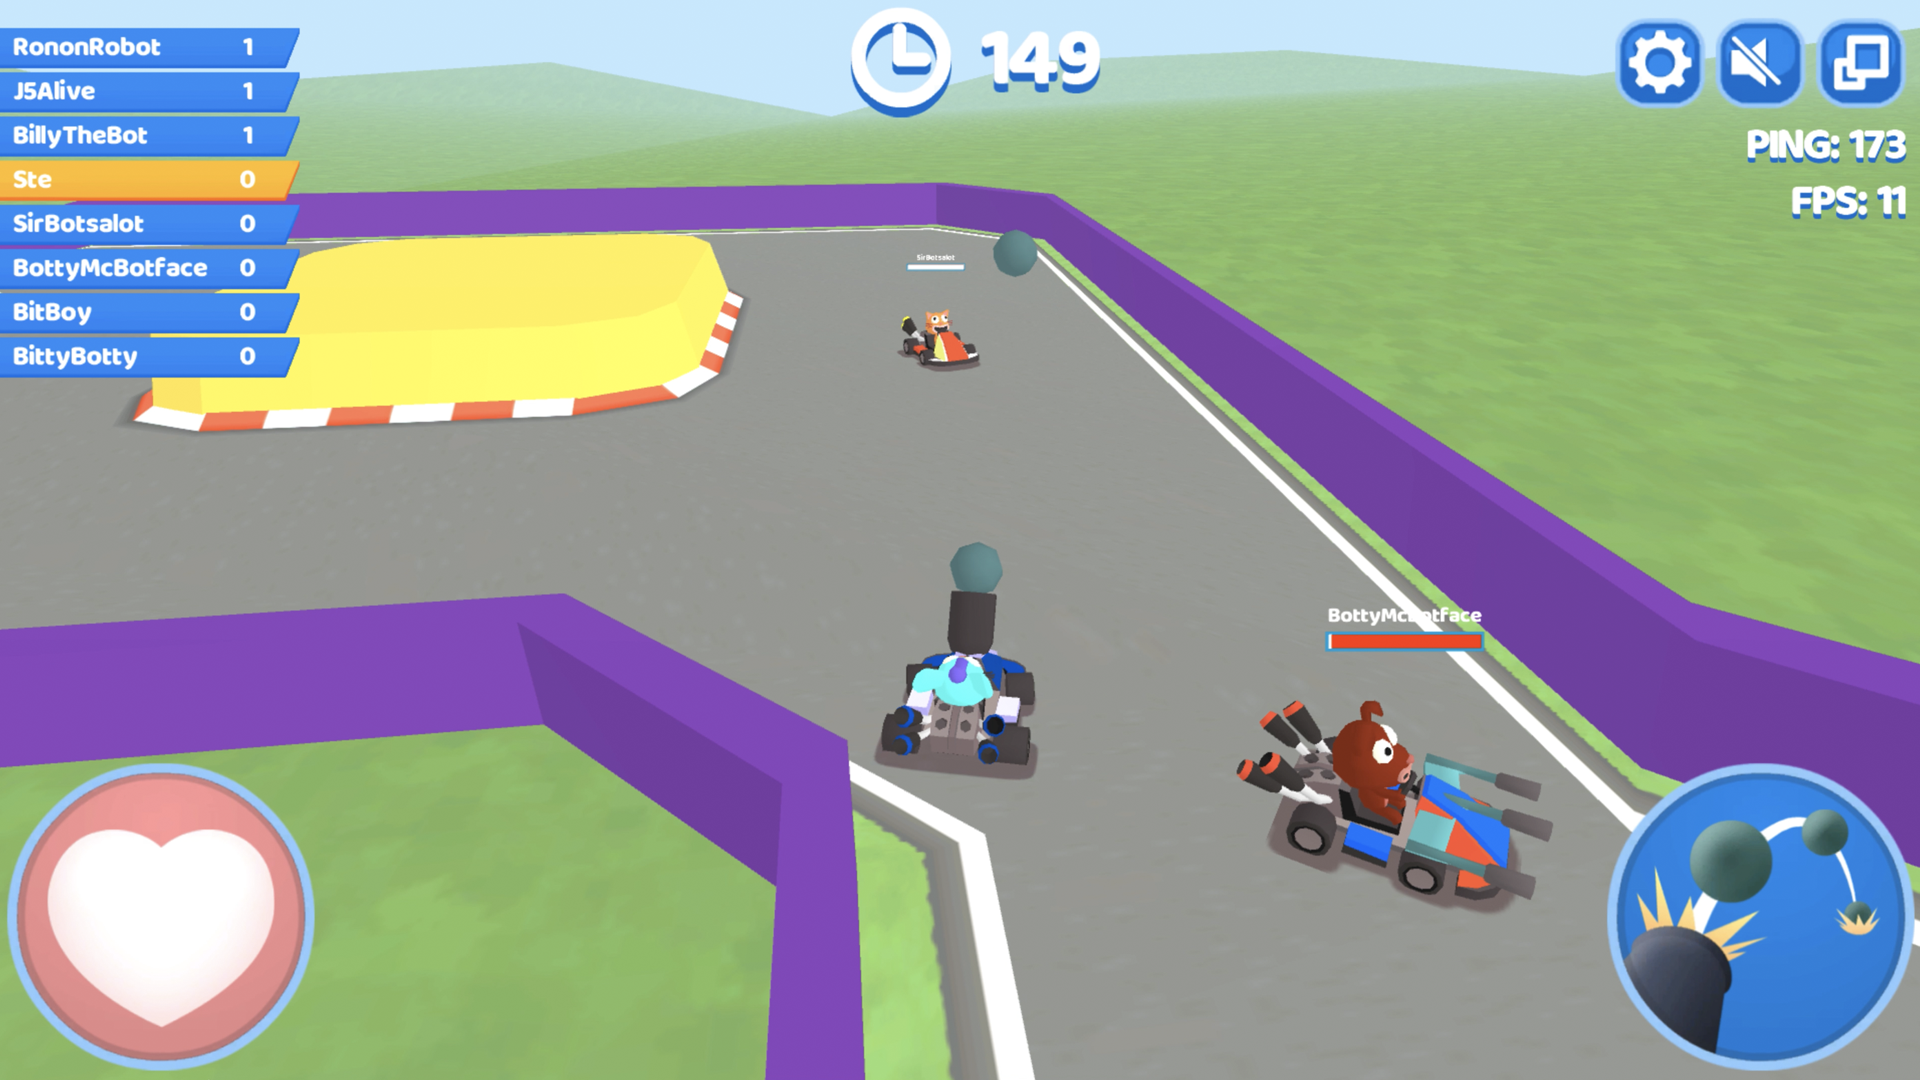 Smash Karts Game GIF